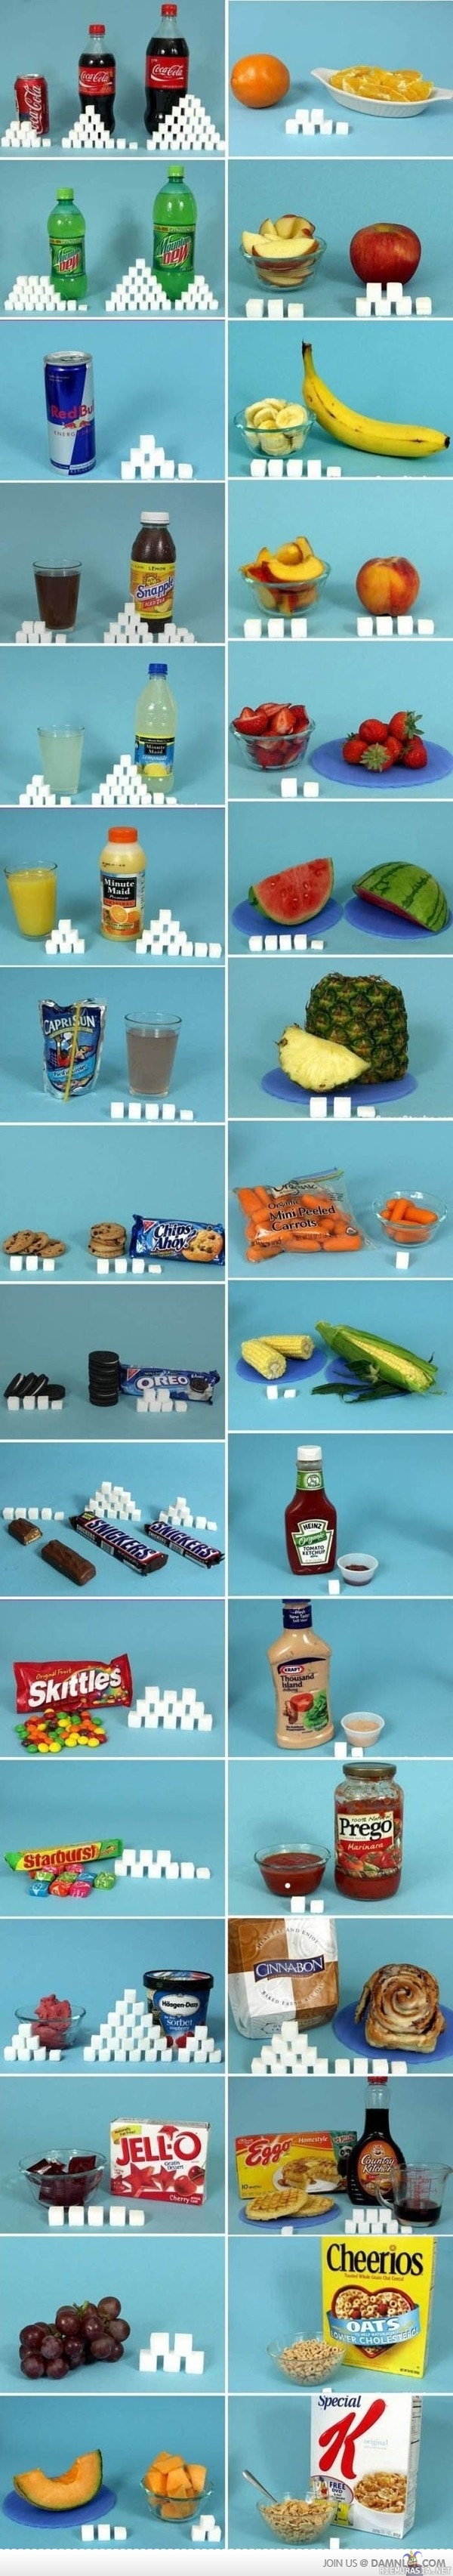 Tiedätkö kuinka paljon syöt sokeria?